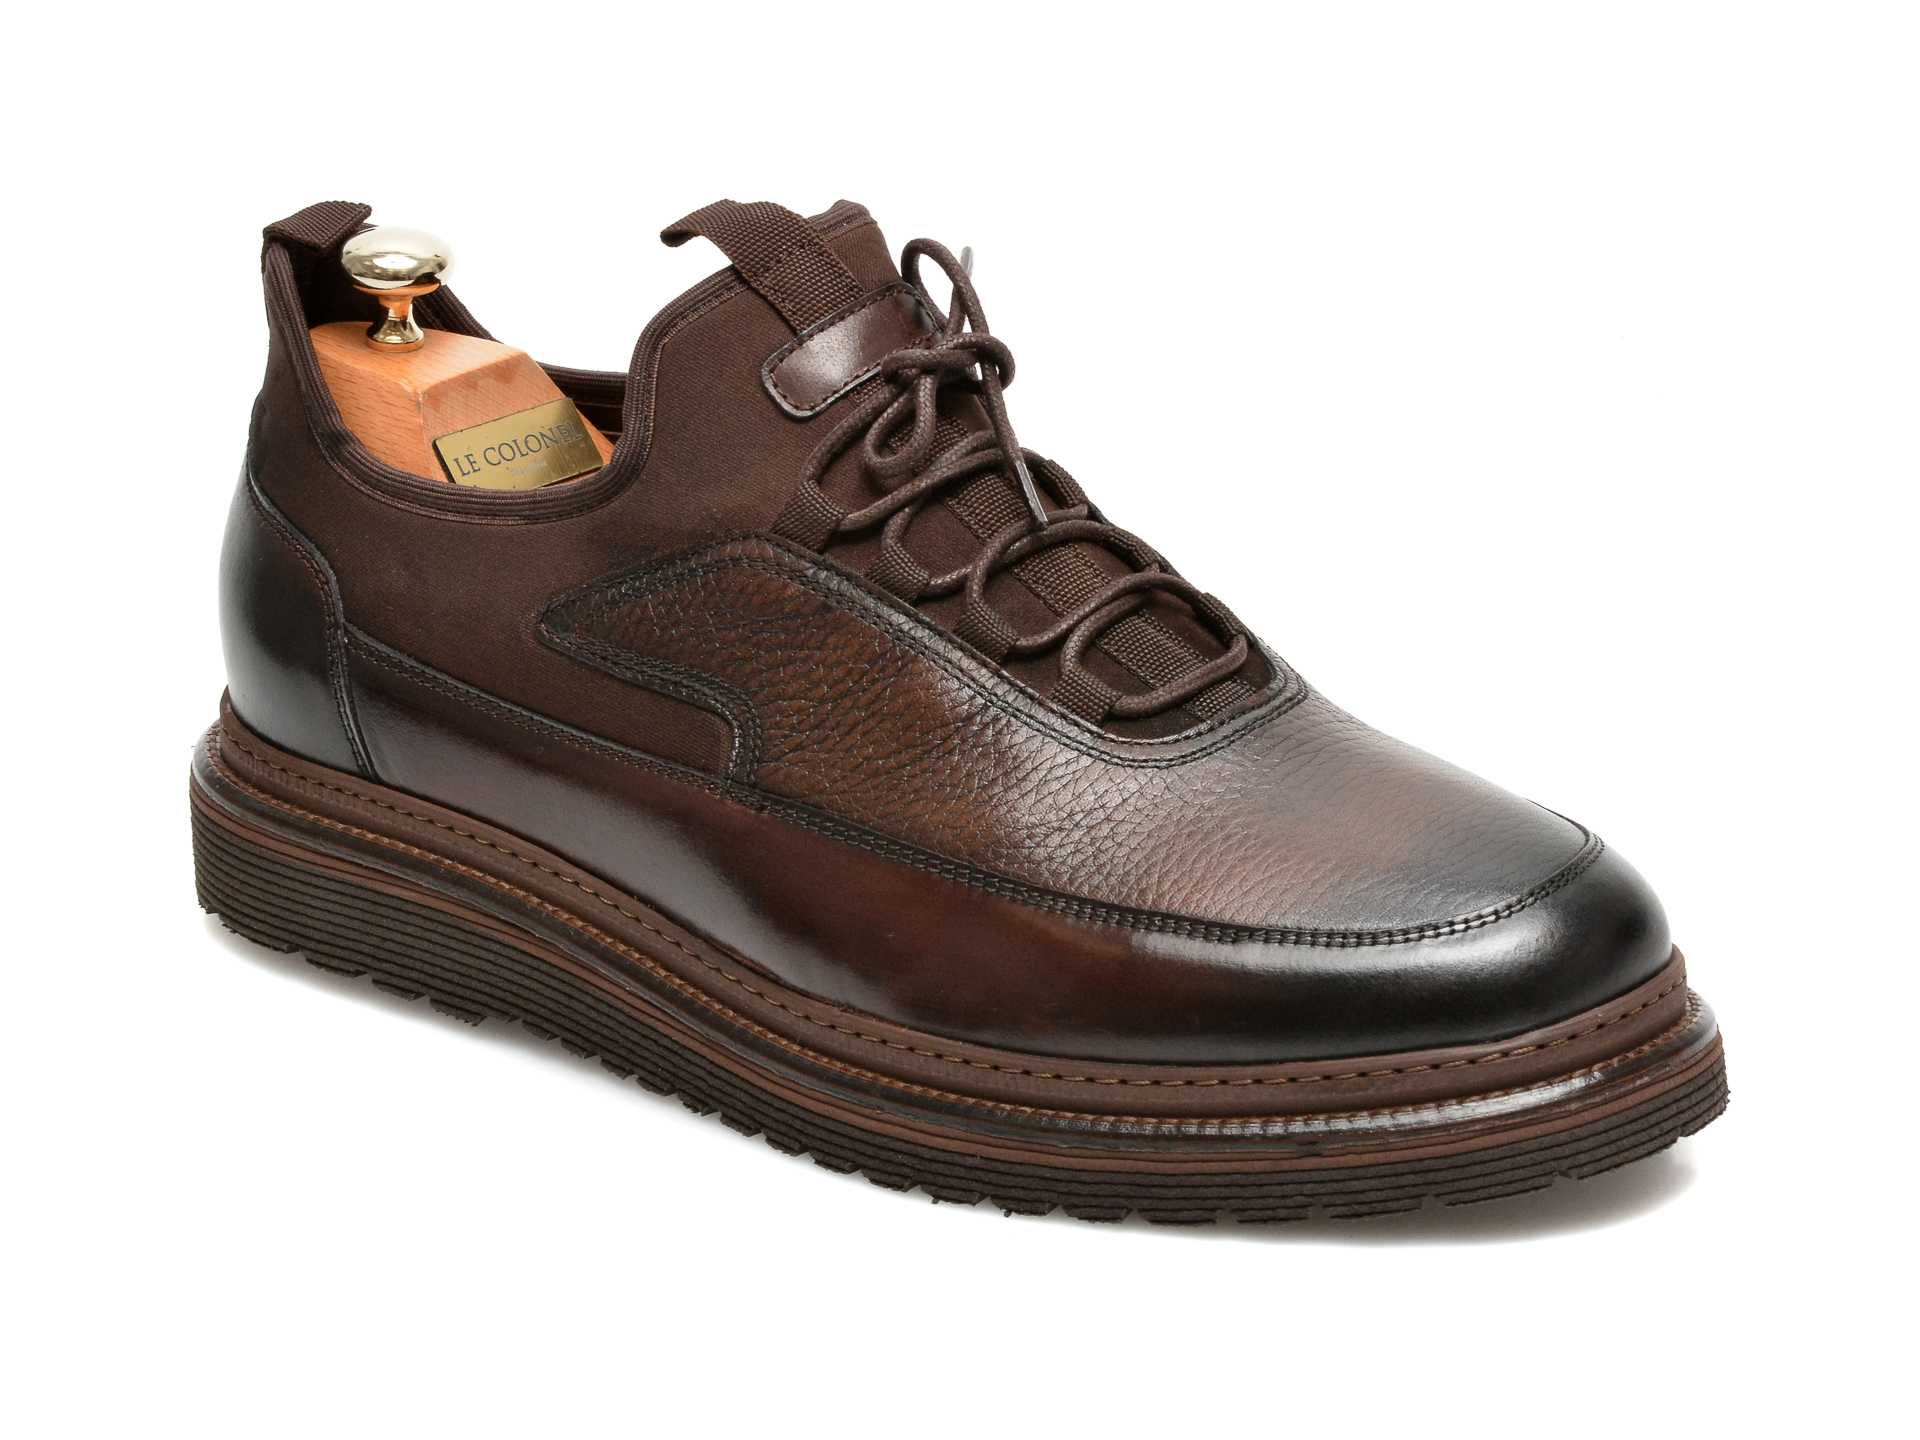 Pantofi LE COLONEL maro, 64816, din material textil si piele naturala Le Colonel Le Colonel